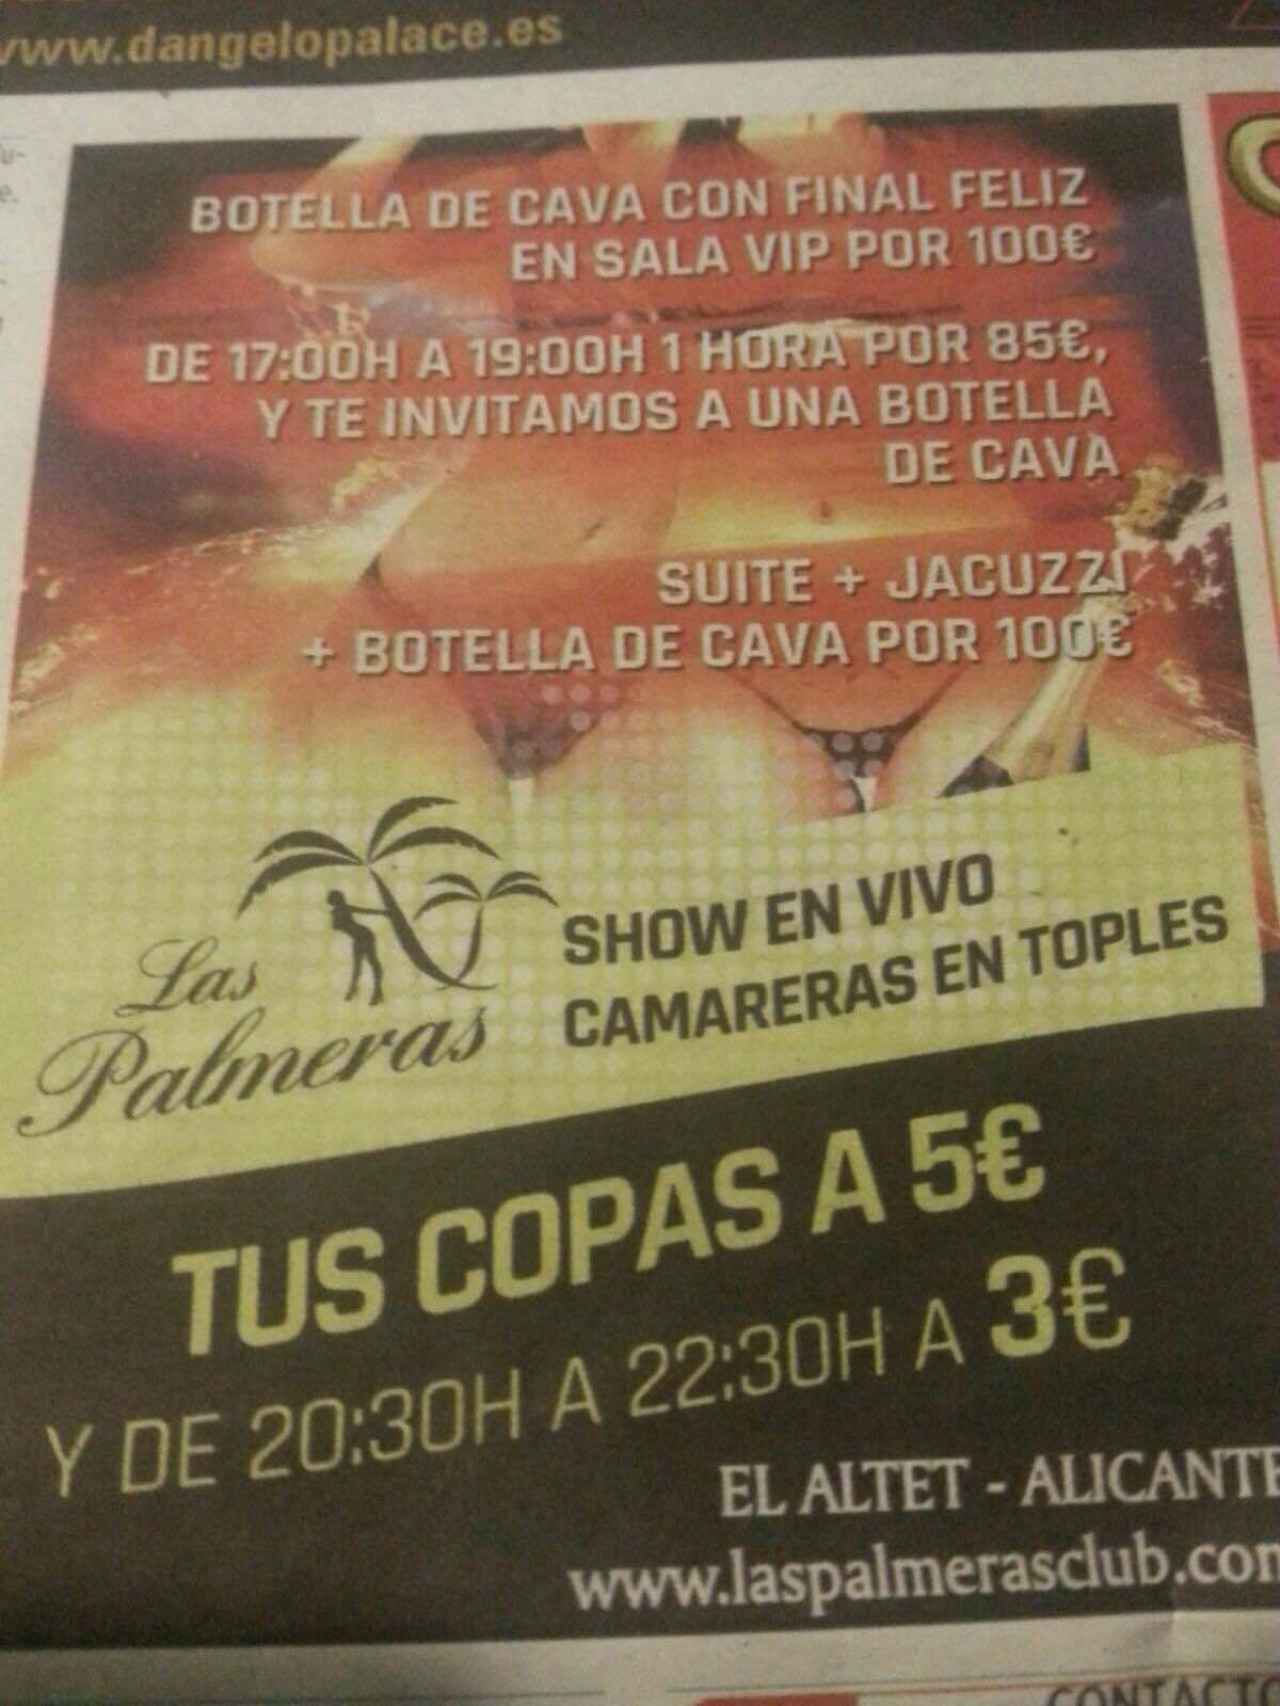 A pesar del incidente, el Club Las Palmeras se promociona como un burdel con copas a bajo precio